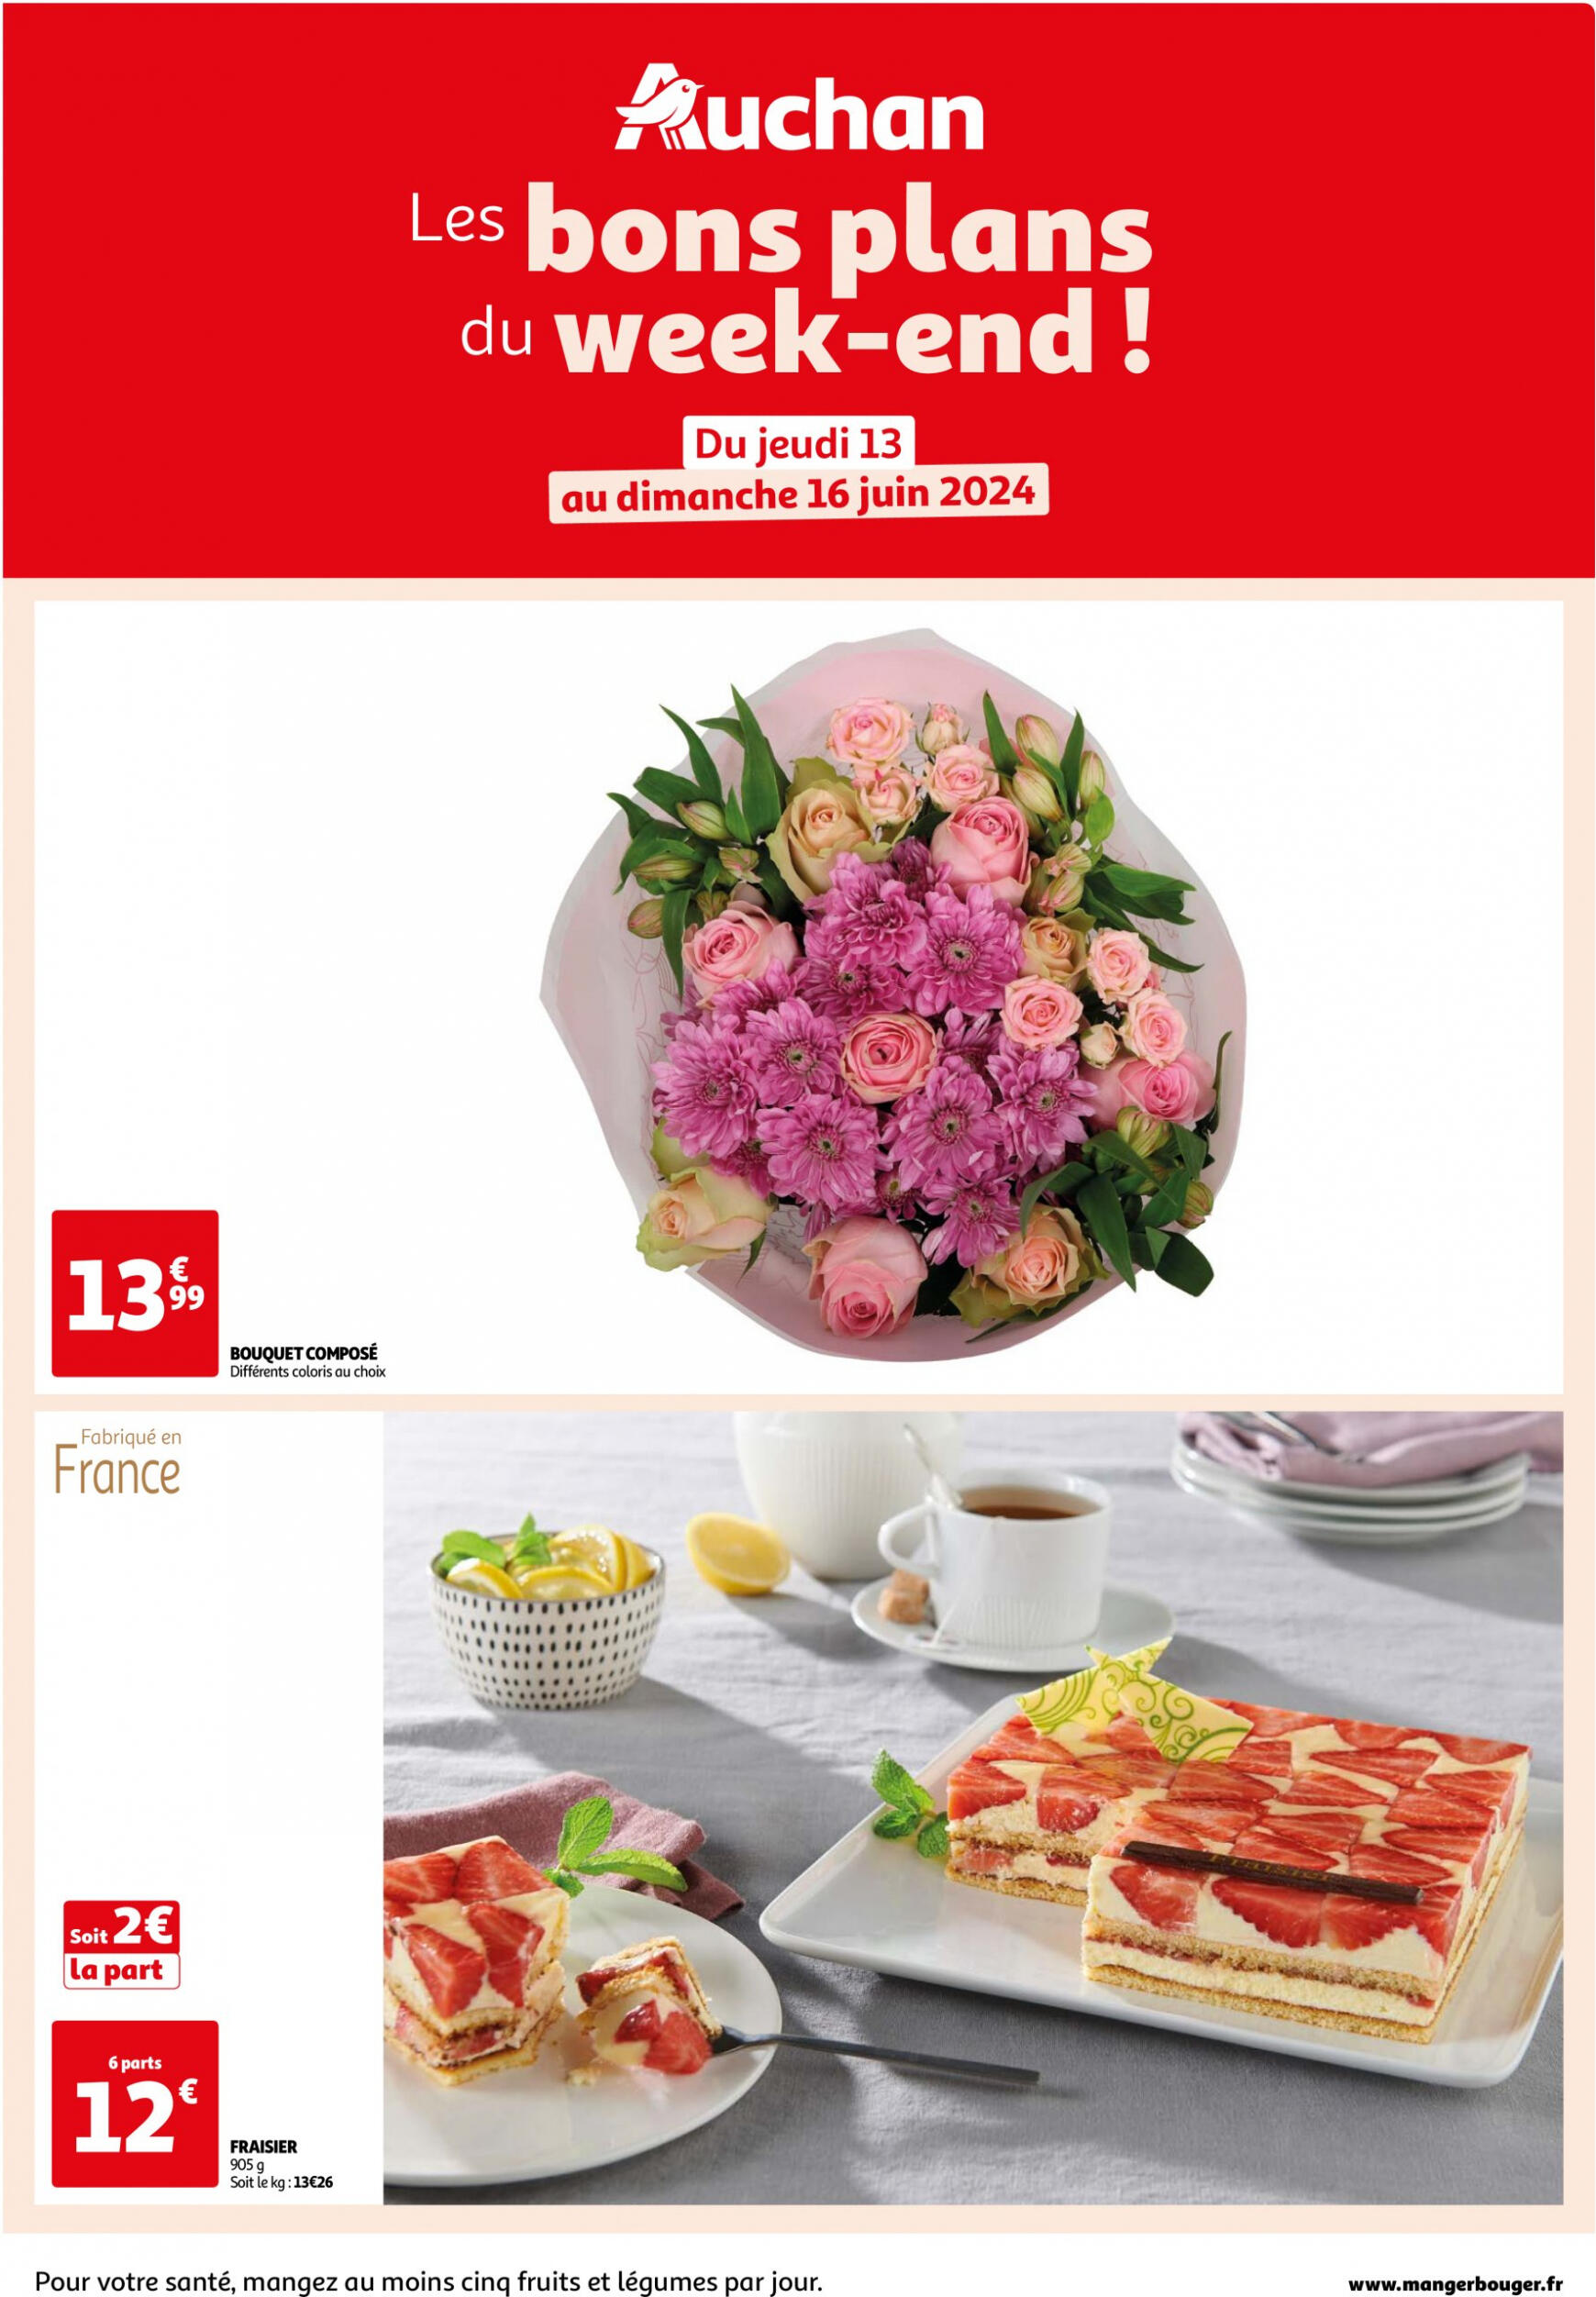 auchan - Auchan - Les bons plans du week-end dans votre hyper ! folder huidig 13.06. - 16.06. - page: 1